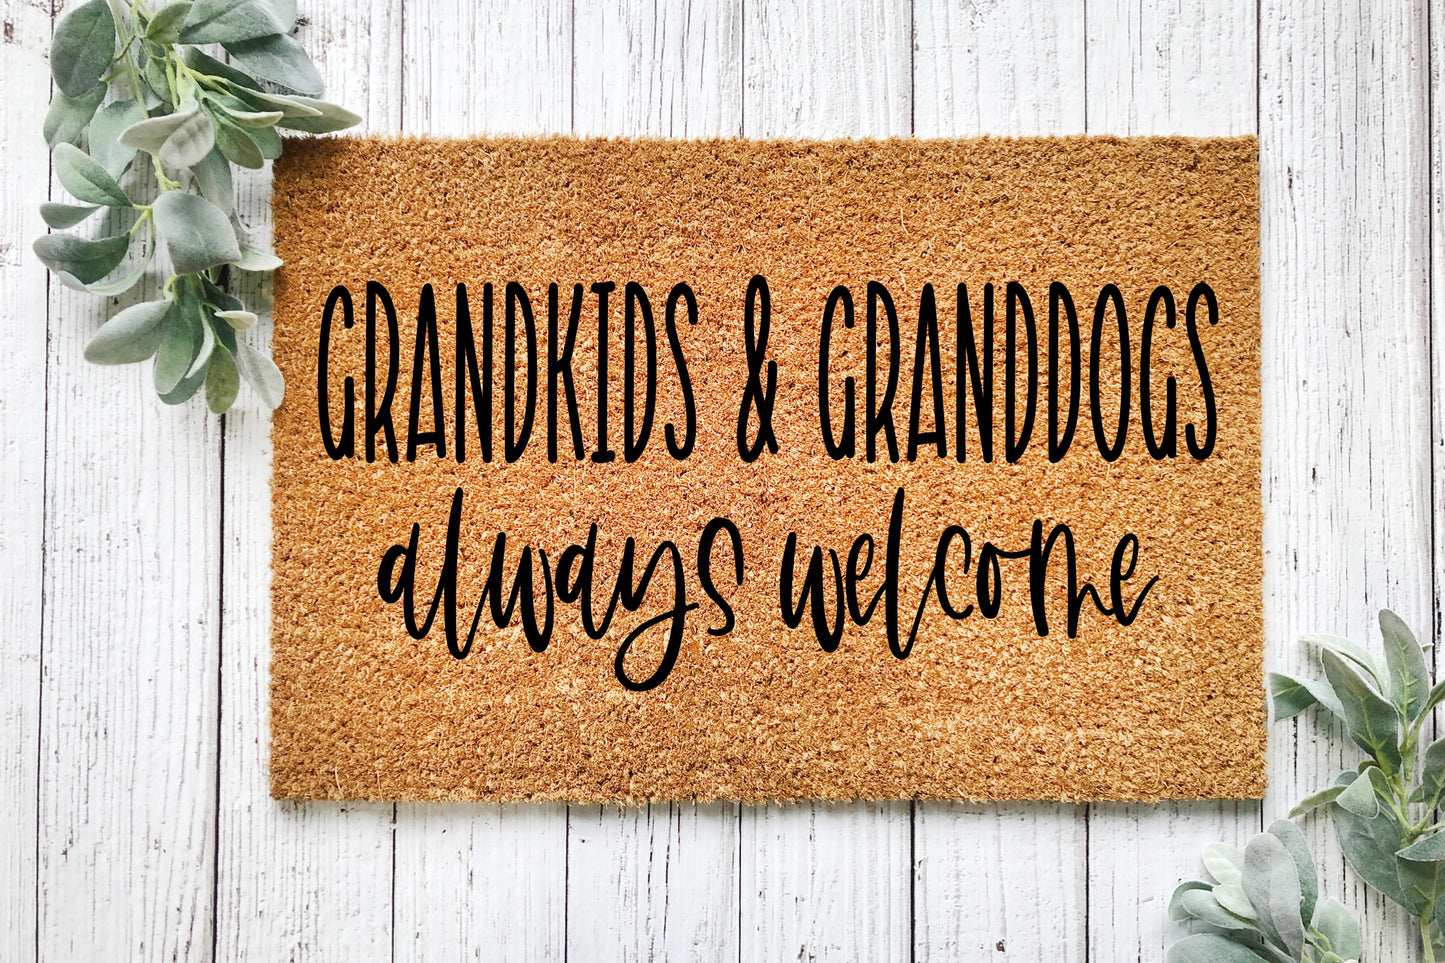 Grandkids & Granddogs Always Welcome Doormat